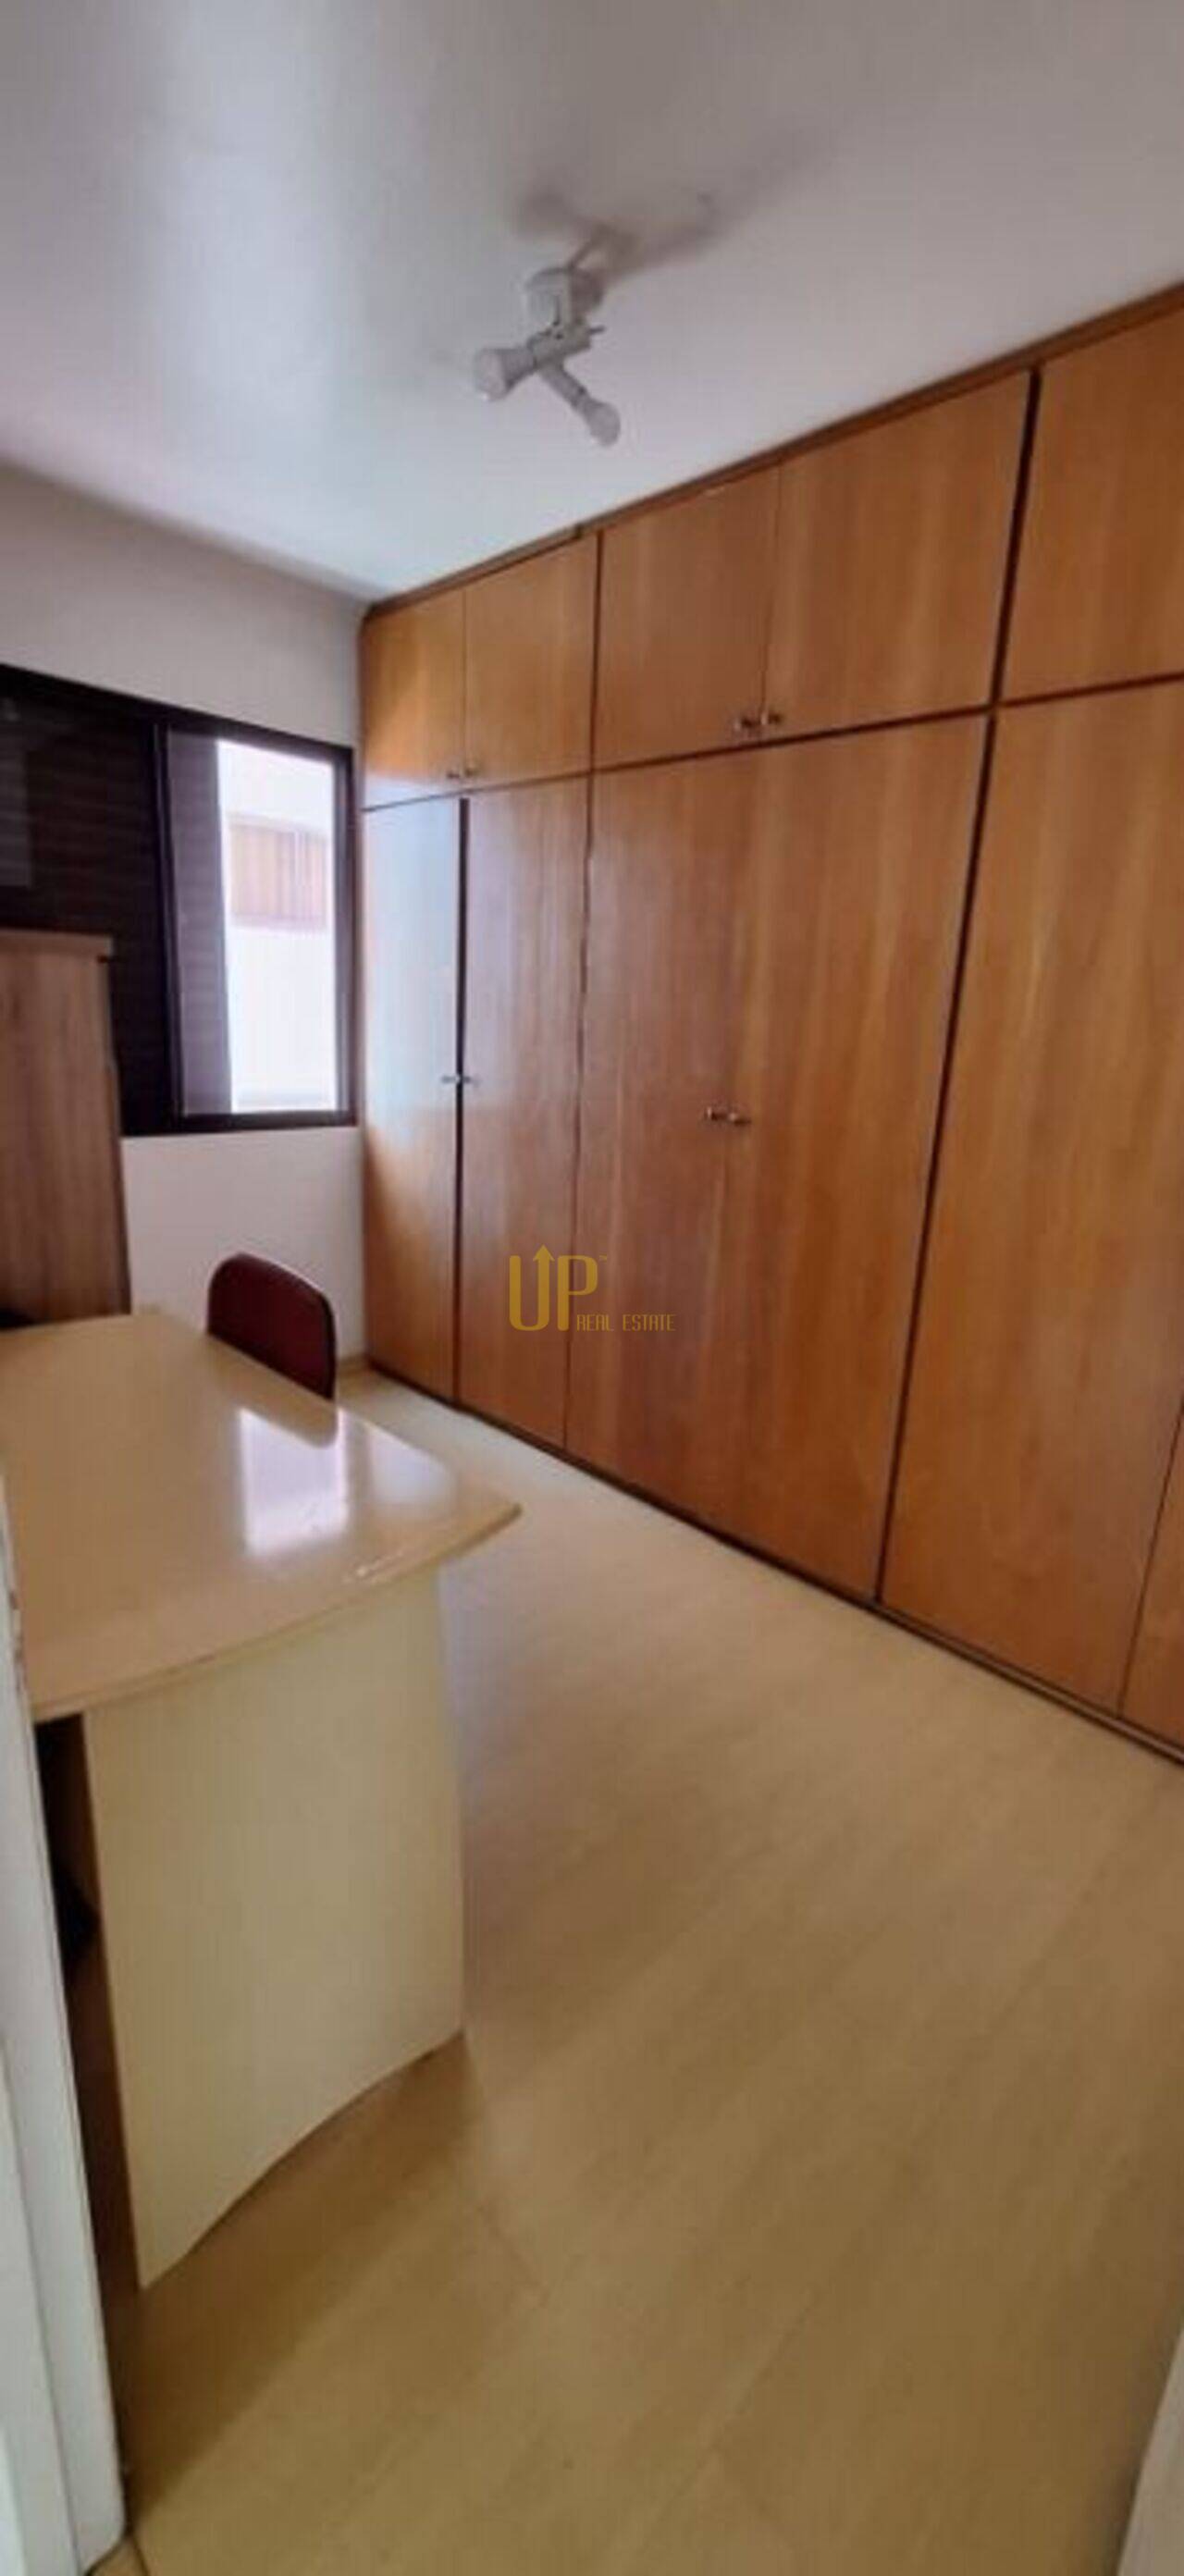 Apartamento com 2 dormitórios, 1 banheiro e 1 vaga à venda, 55 m² por R$ 480.000 - Saude - São Paulo/SP